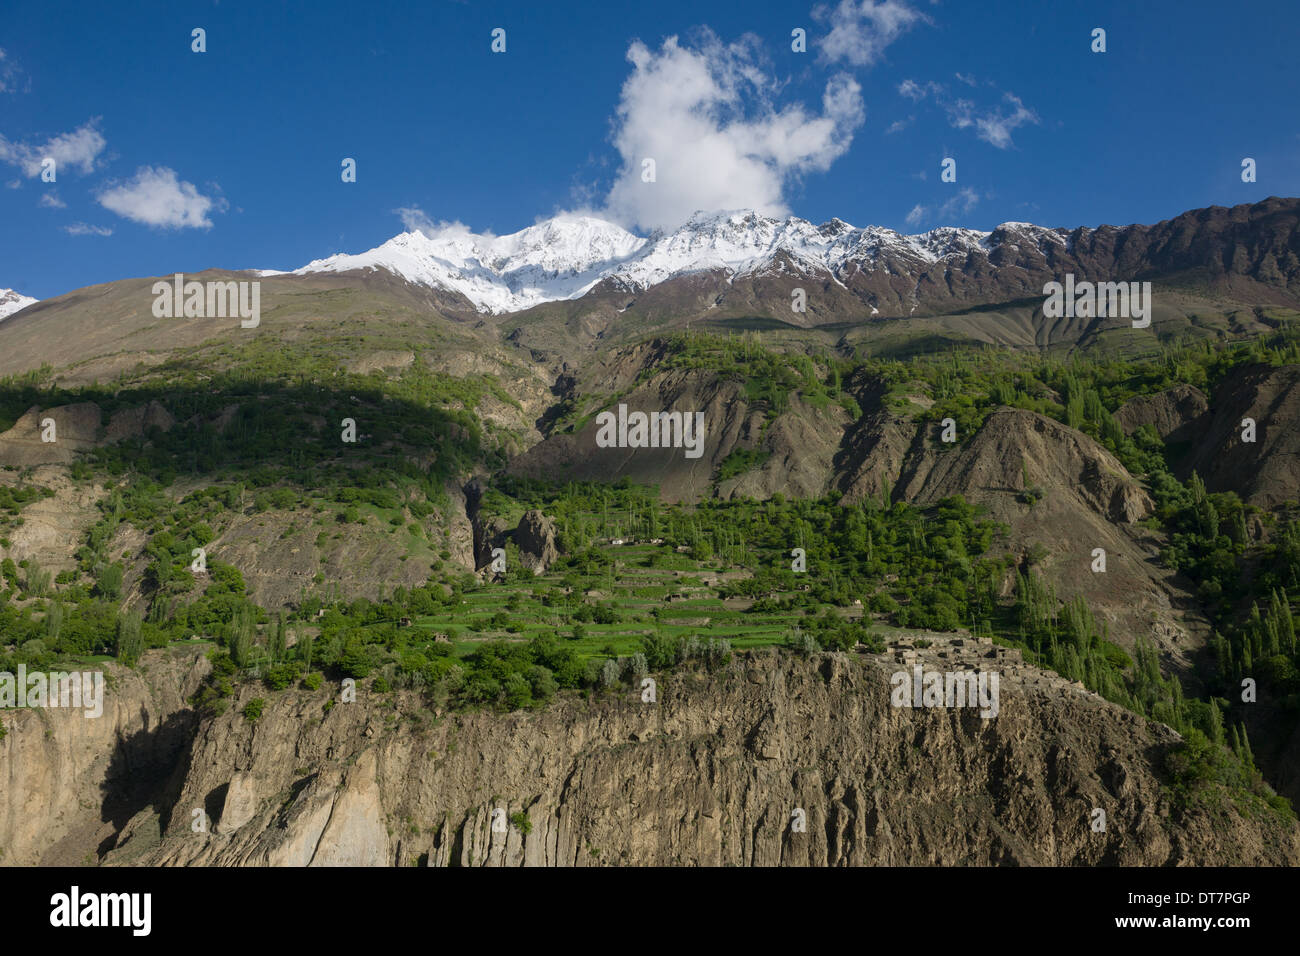 Village et de terrasses construites sur le flanc d'une vallée escarpée, avec les sommets enneigés du Rakaposhi derrière, vu de la route Karakoram entre la vallée de l'Hunza et Gilgit, Pakistan, Gilgit-Baltistan Banque D'Images